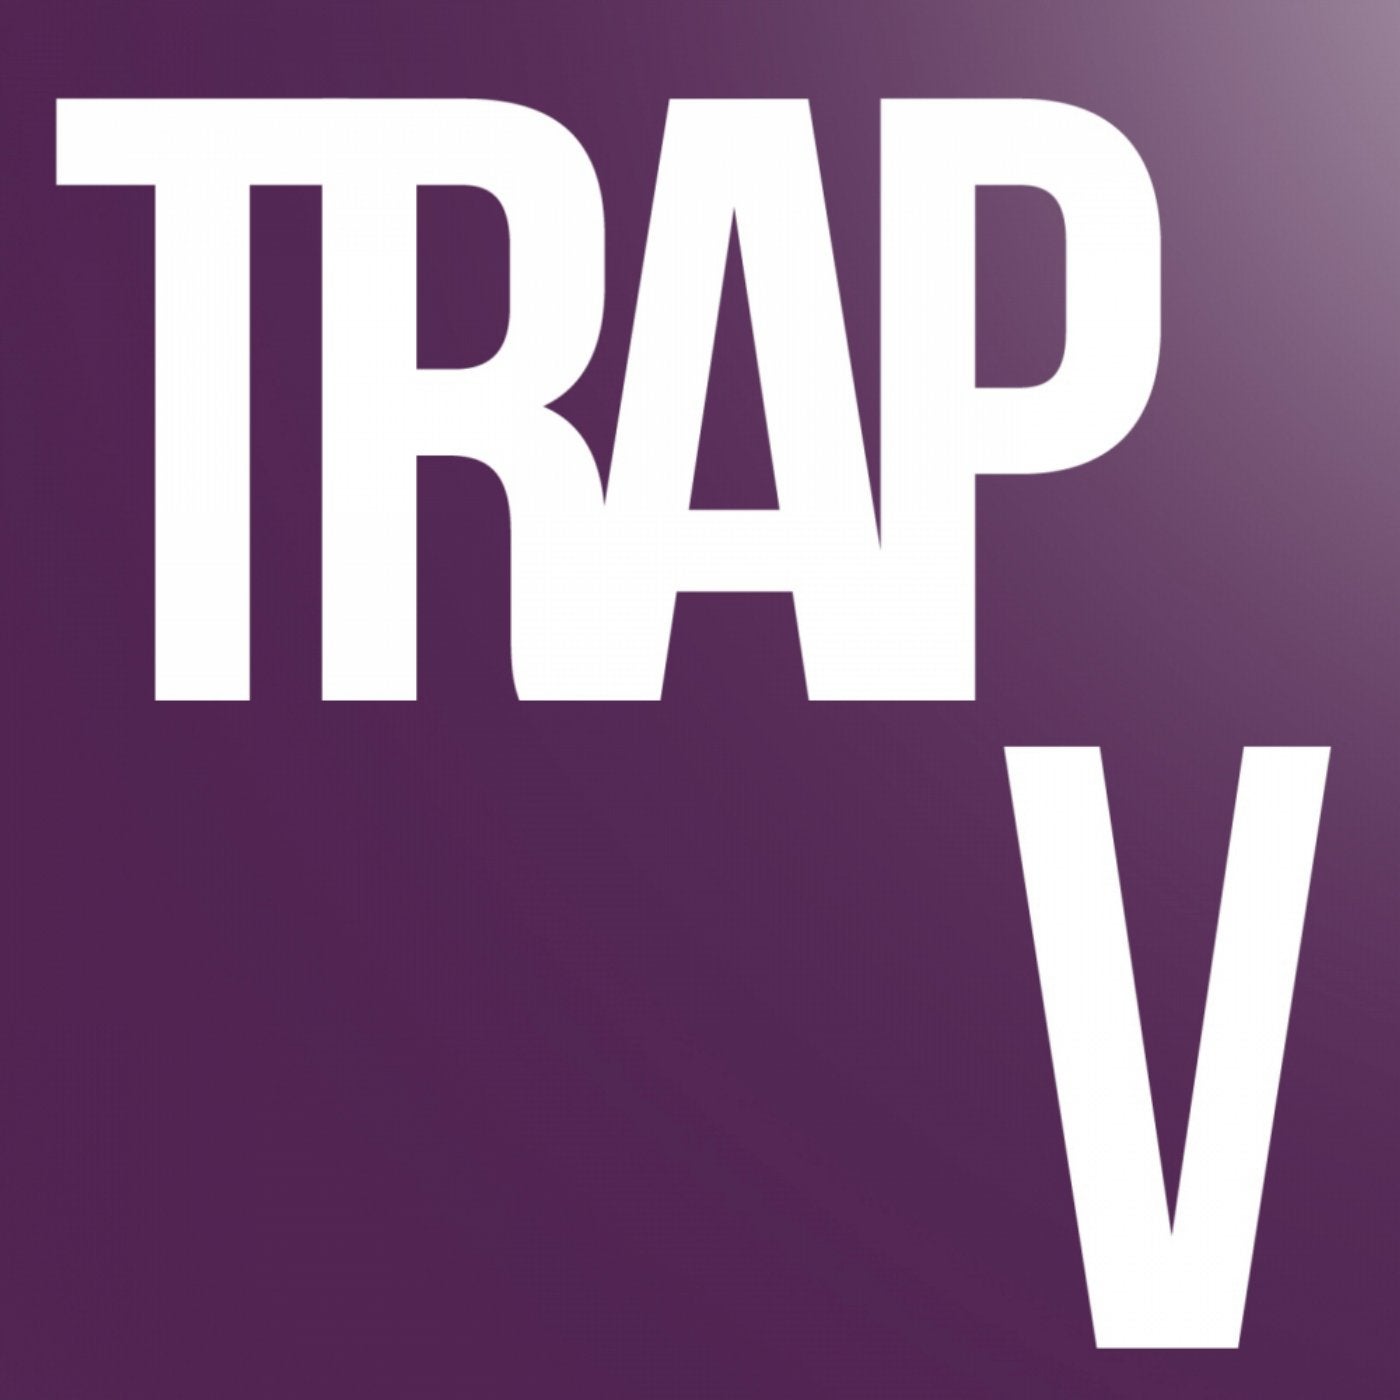 Trap V